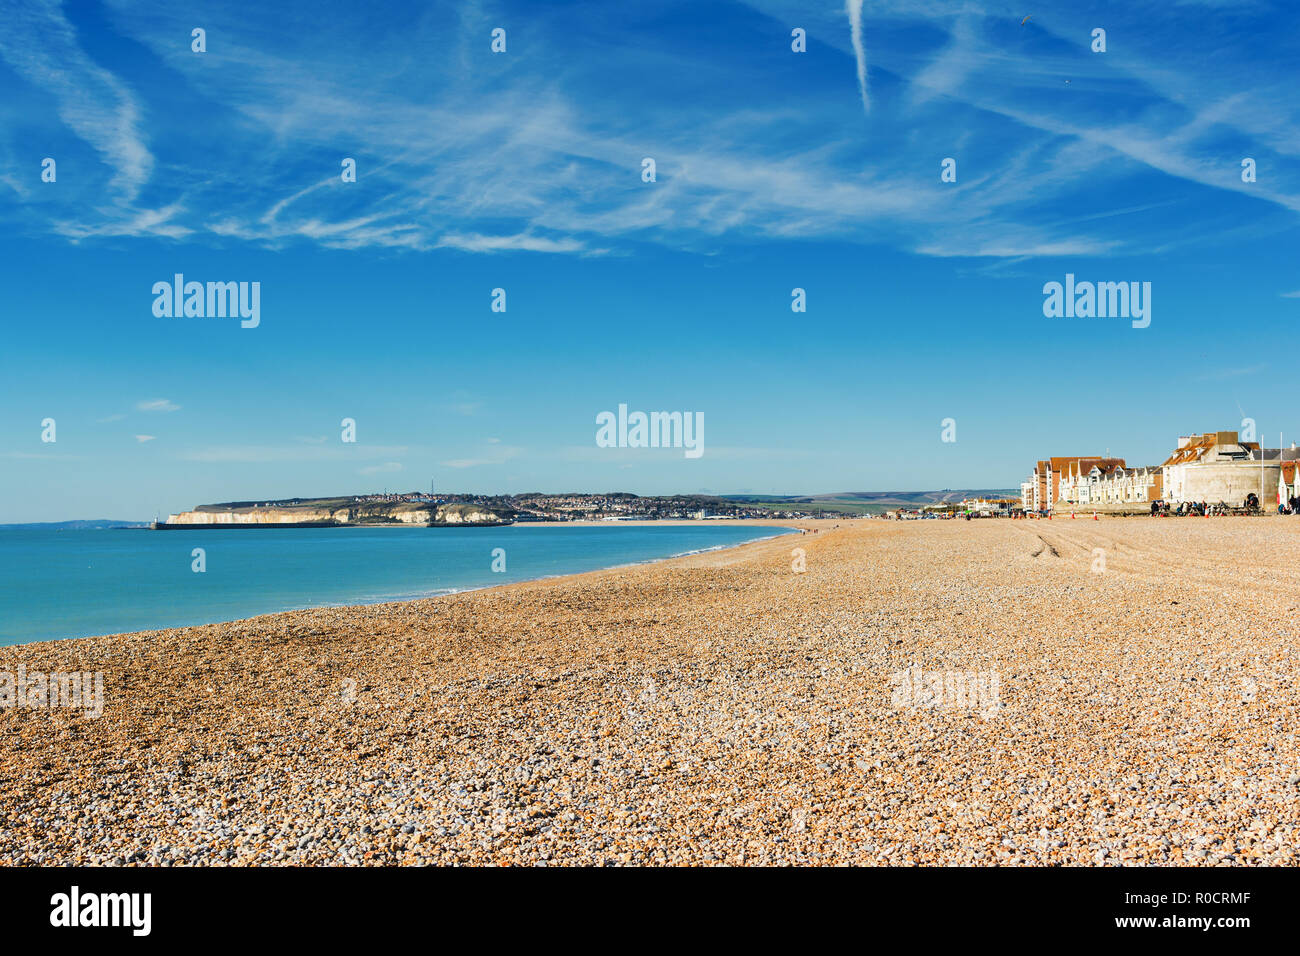 La plage de Seaford, East Sussex. L'Angleterre, une plage de galets et d'une mer bleue, vue de Newhaven town, selective focus Banque D'Images